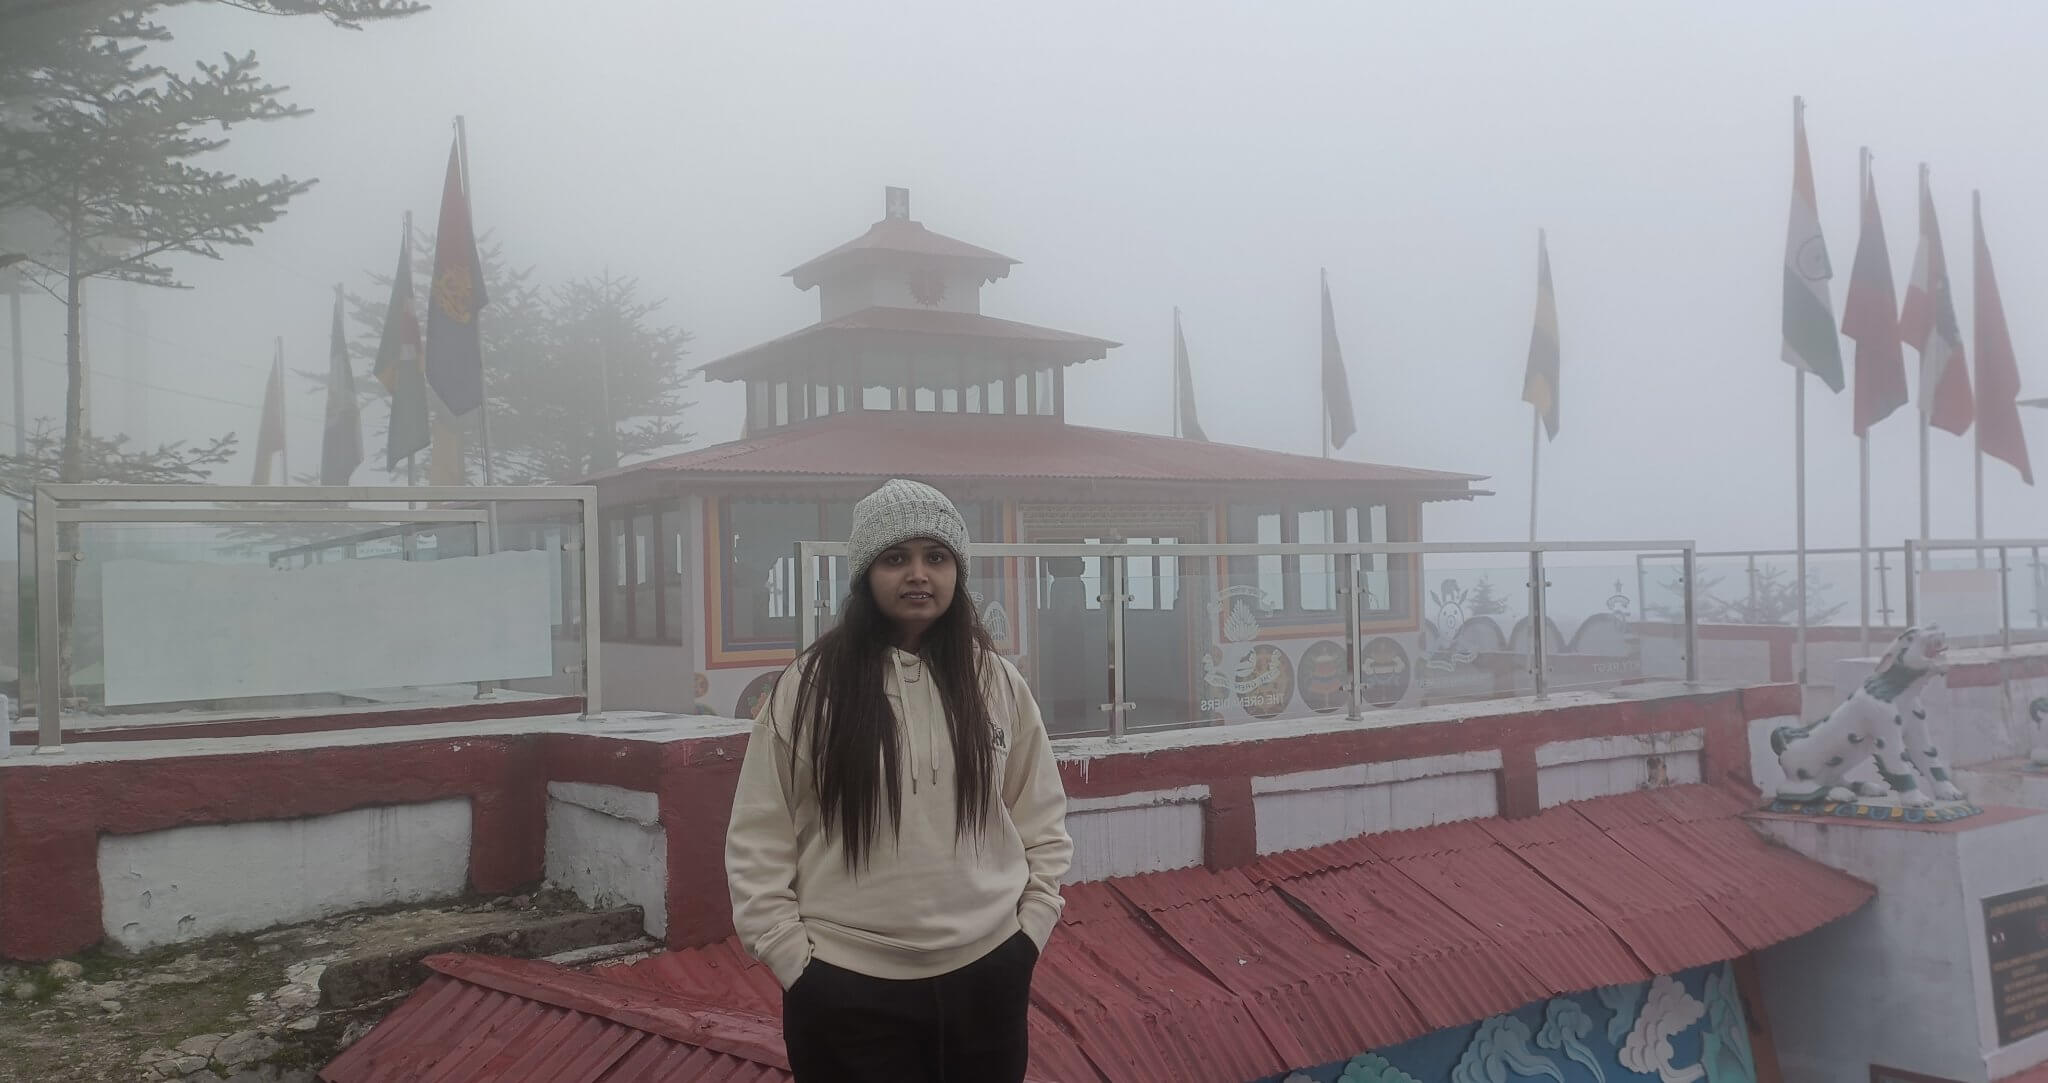 jasawant_singh_memorial_in_fog